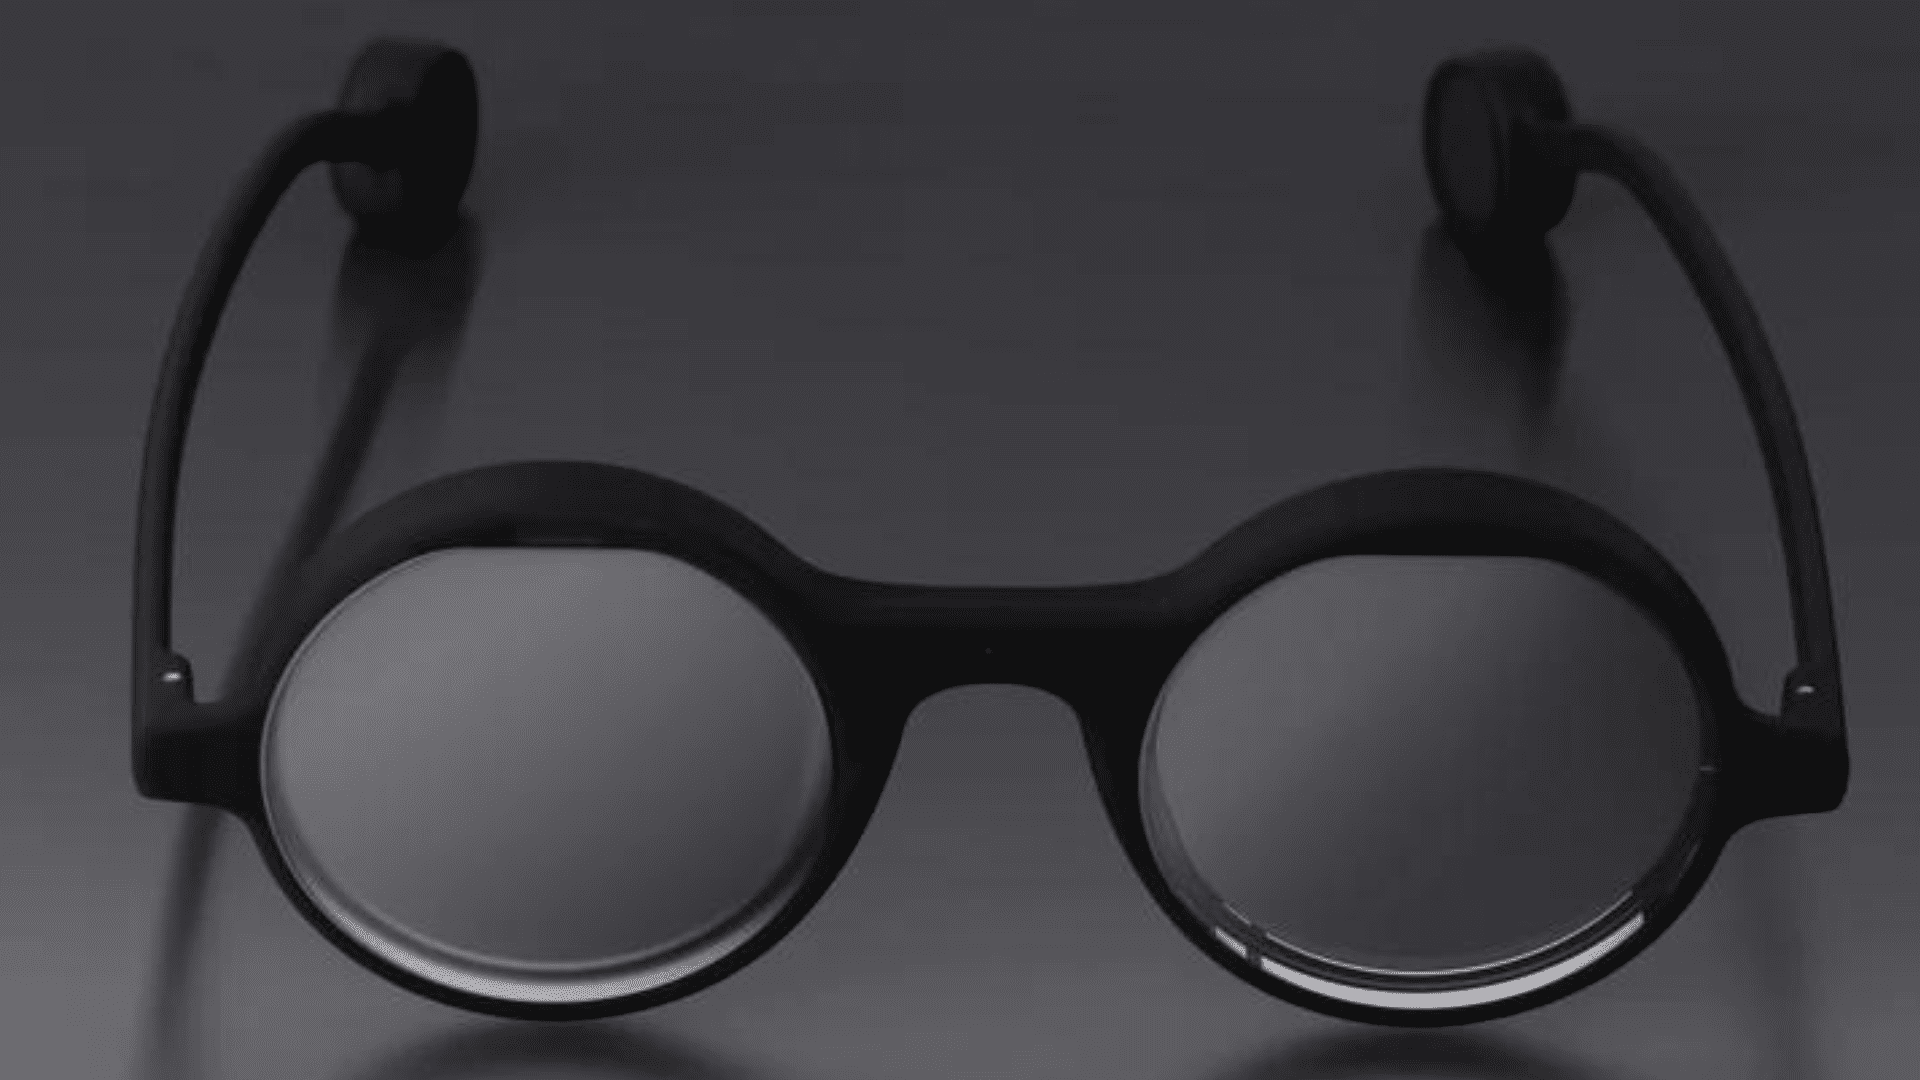 Brilliant Labs' smart glasses 